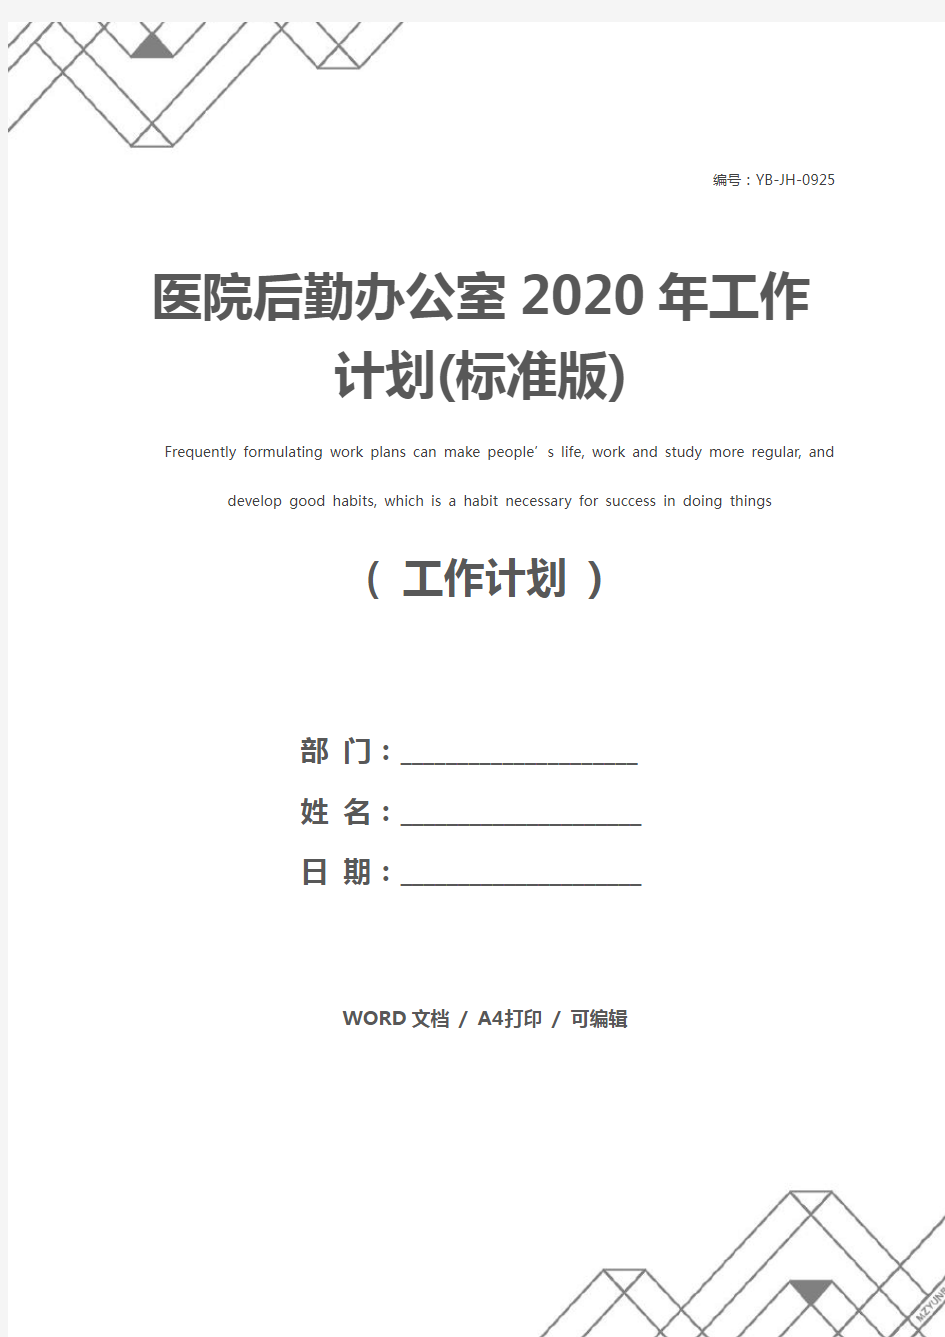 医院后勤办公室2020年工作计划(标准版)